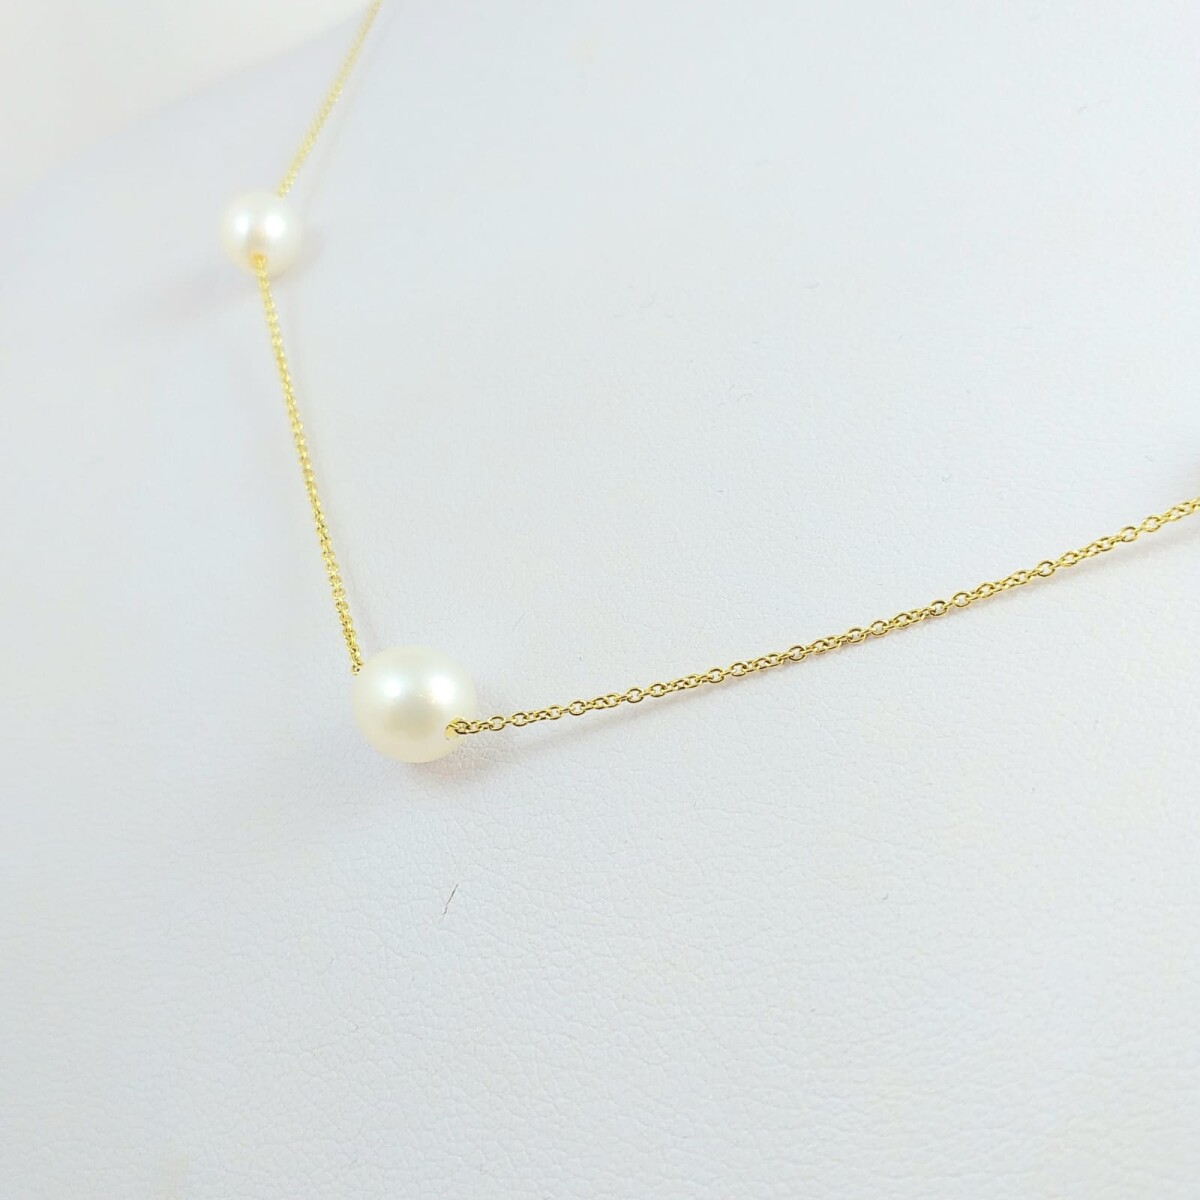 Cadena de oro 18Ktes, con 7 perlas de cultivo de 7.5mm, espesor de cadena 1mm, largo de cadena 45cm. 